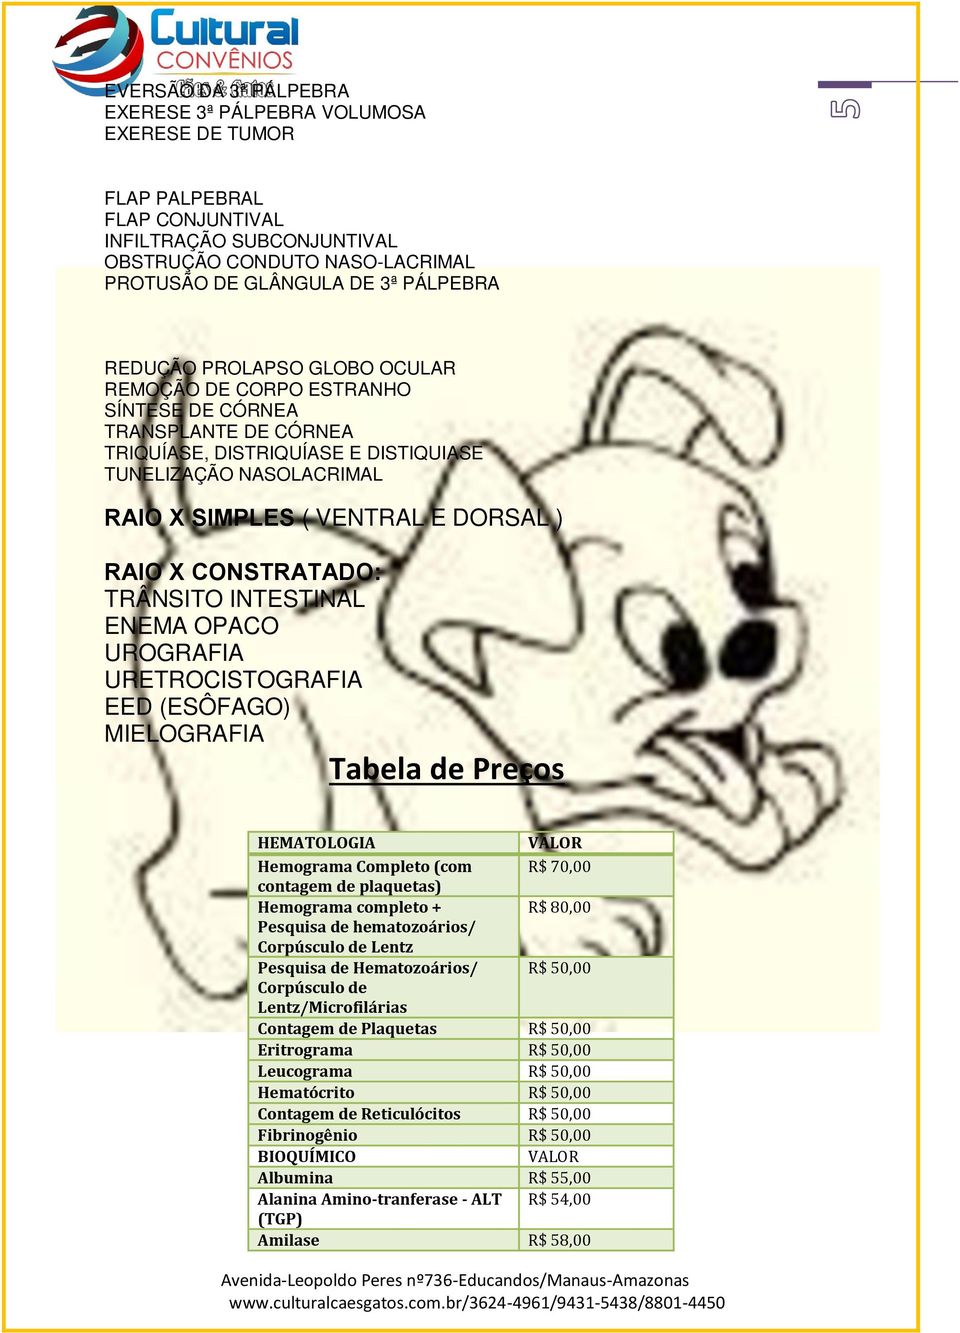 X CONSTRATADO: TRÂNSITO INTESTINAL ENEMA OPACO UROGRAFIA URETROCISTOGRAFIA EED (ESÔFAGO) MIELOGRAFIA Tabela de Preços HEMATOLOGIA VALOR Hemograma Completo (com R$ 70,00 contagem de plaquetas)